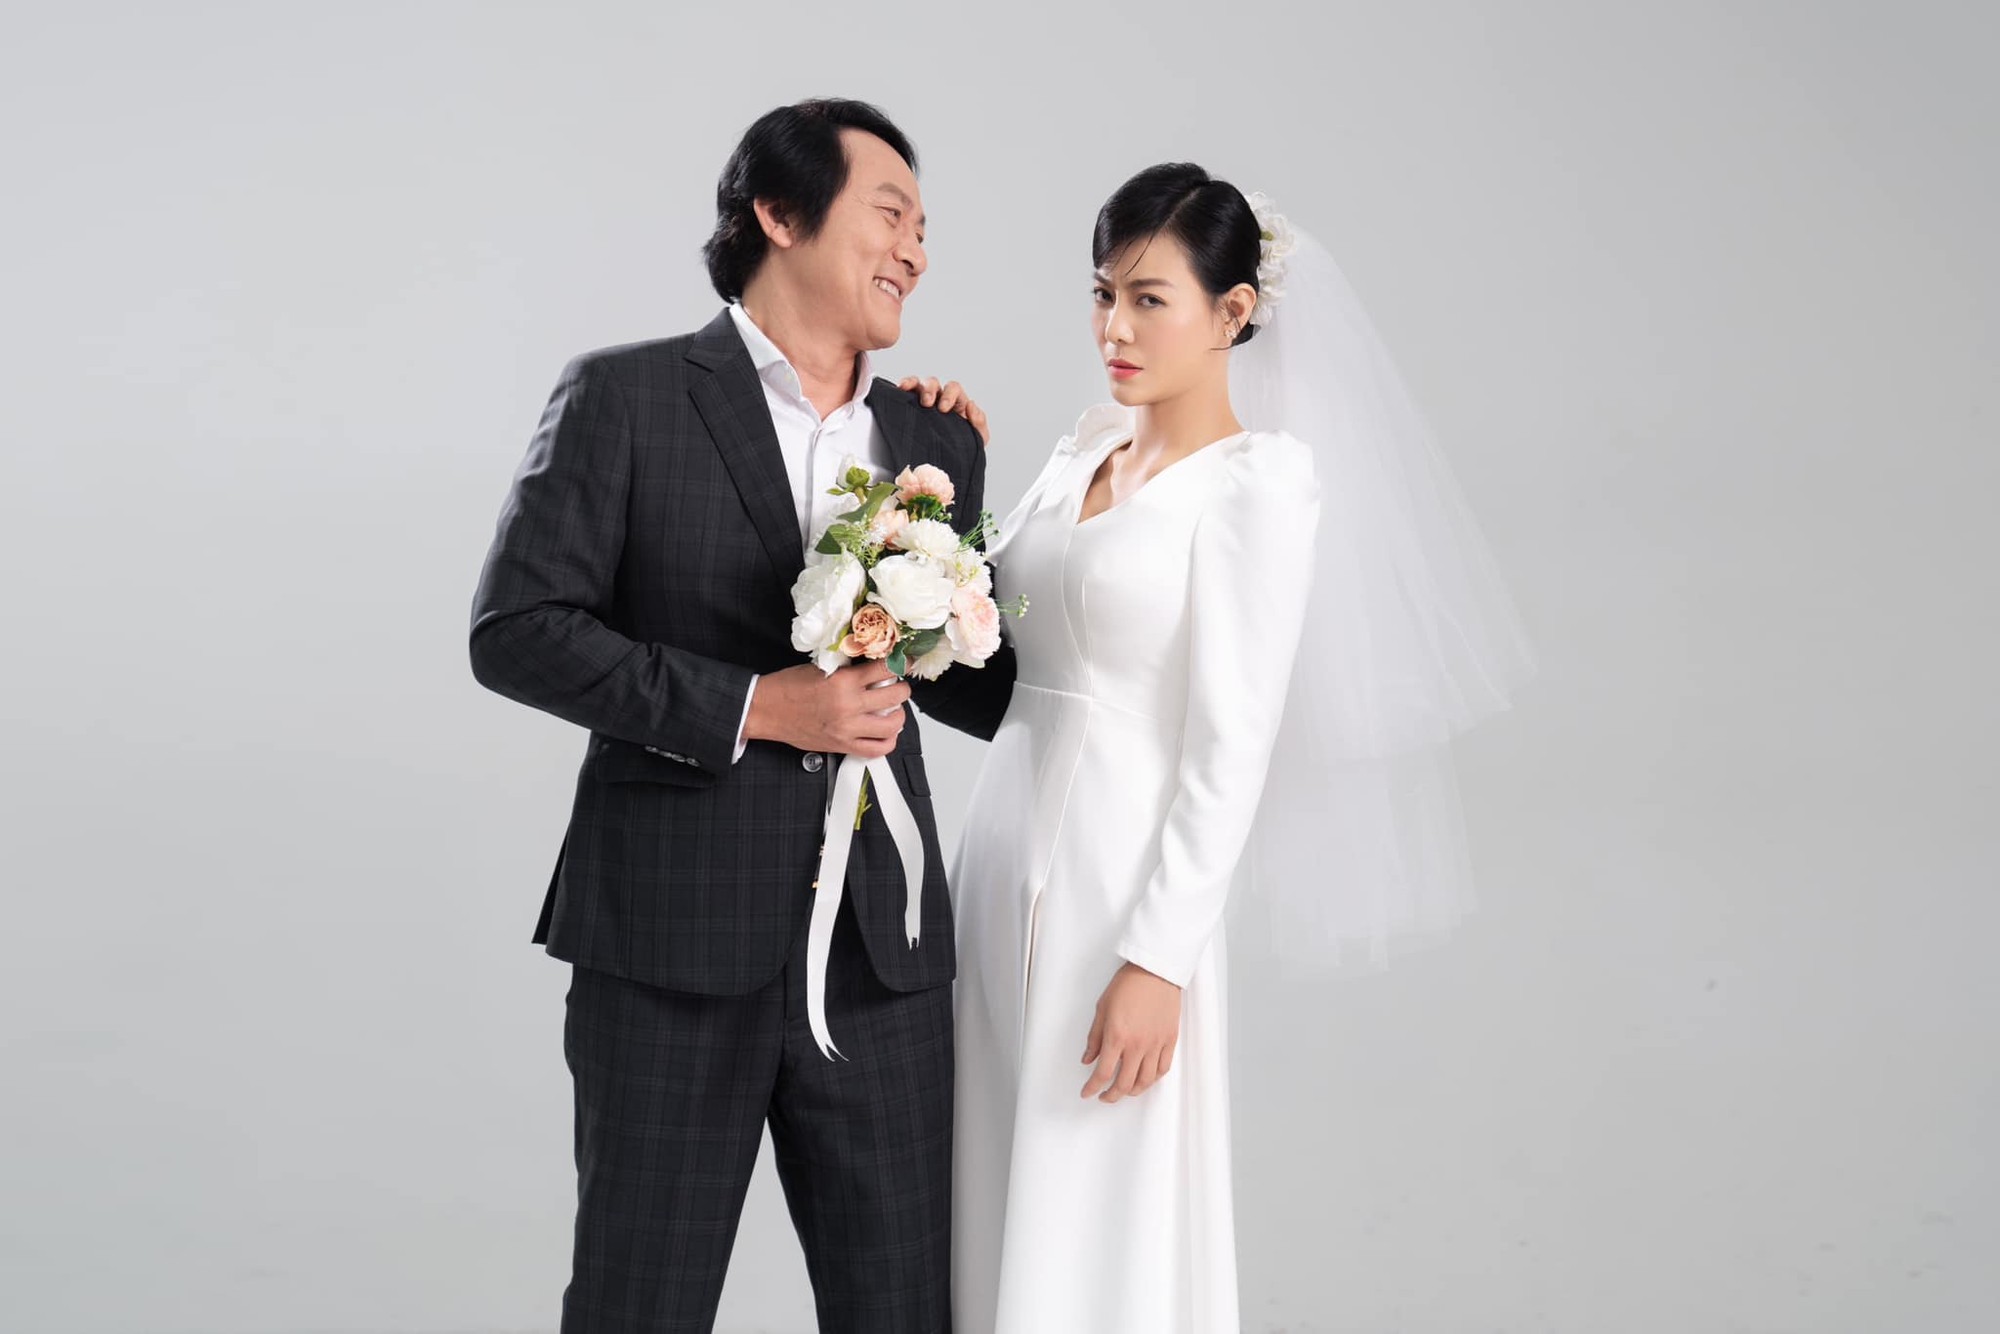 Hoàng Hải, Thanh Hương chụp ảnh cưới, gây bất ngờ ở 'Cuộc đời vẫn đẹp sao' - Ảnh 3.